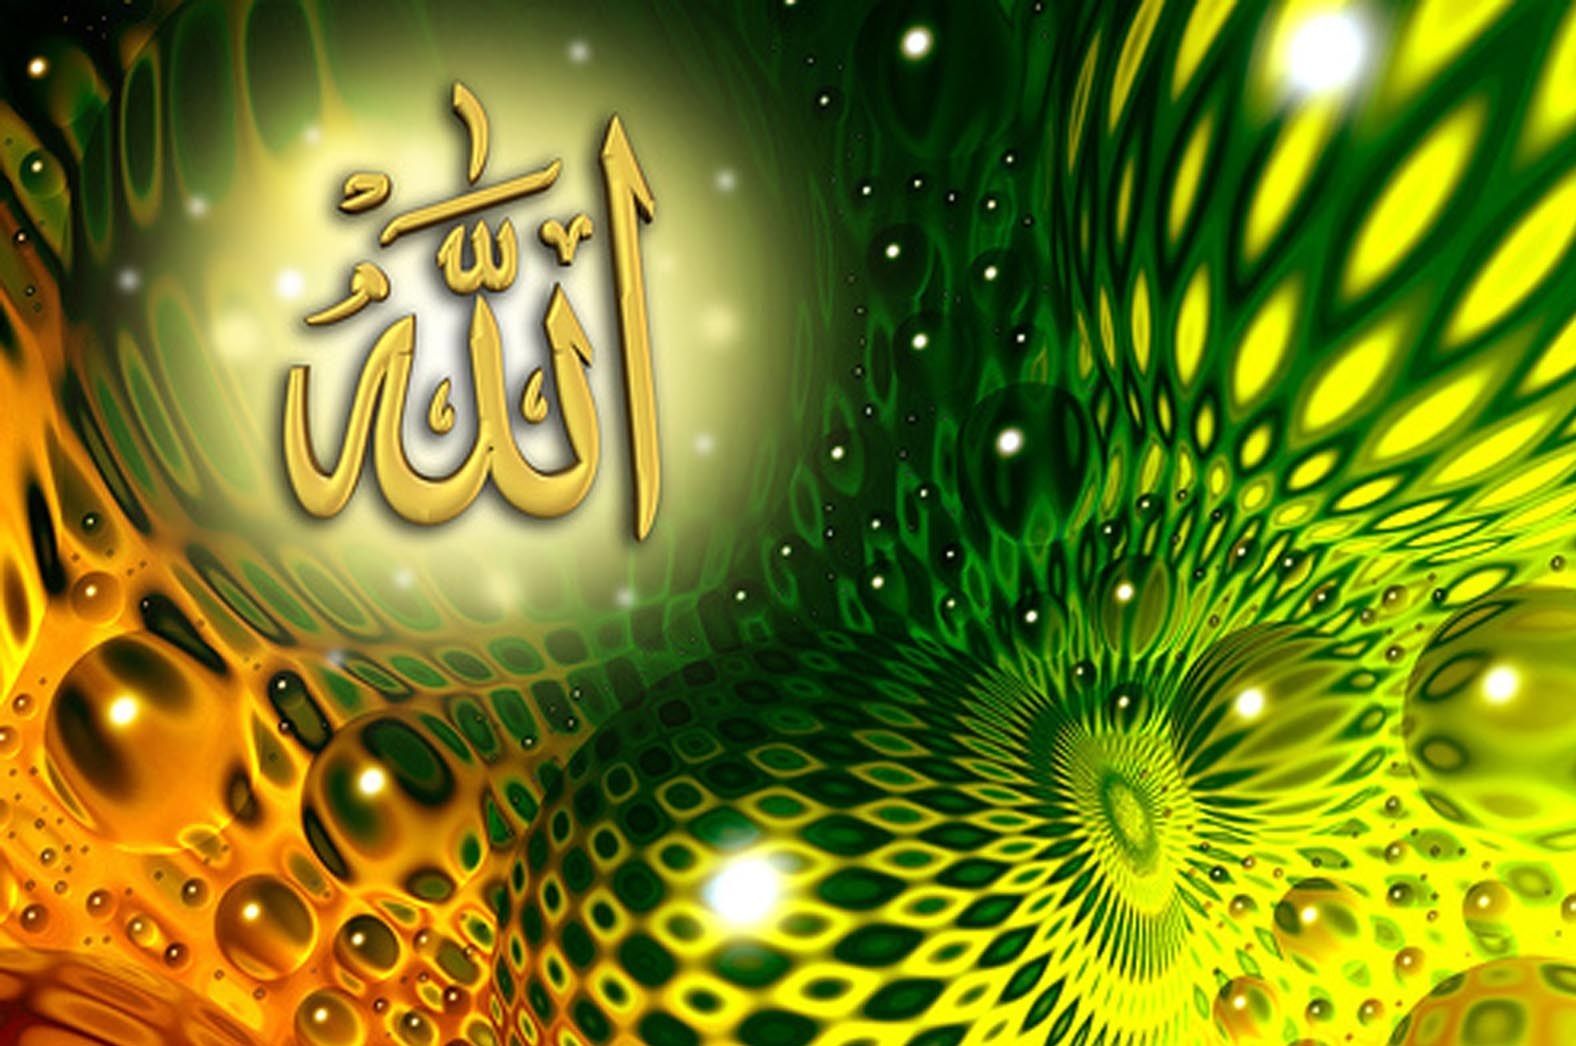 Beautiful Allah Name HD Wallpaper Image Sayed